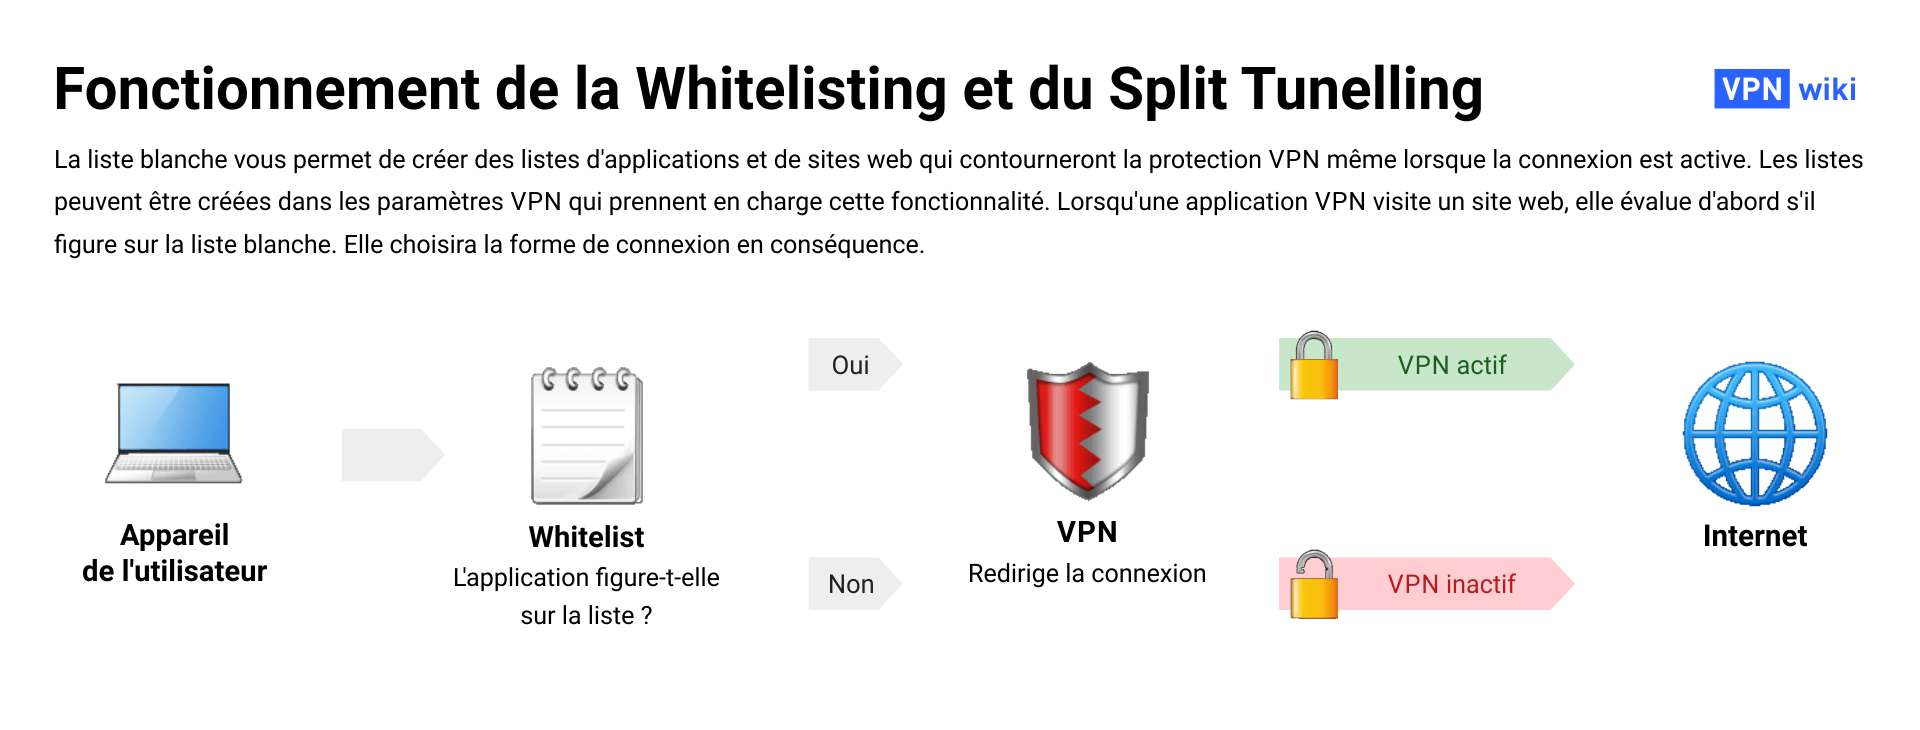 Qu’est-ce que la liste blanche pour les VPN et a quoi sert-elle?